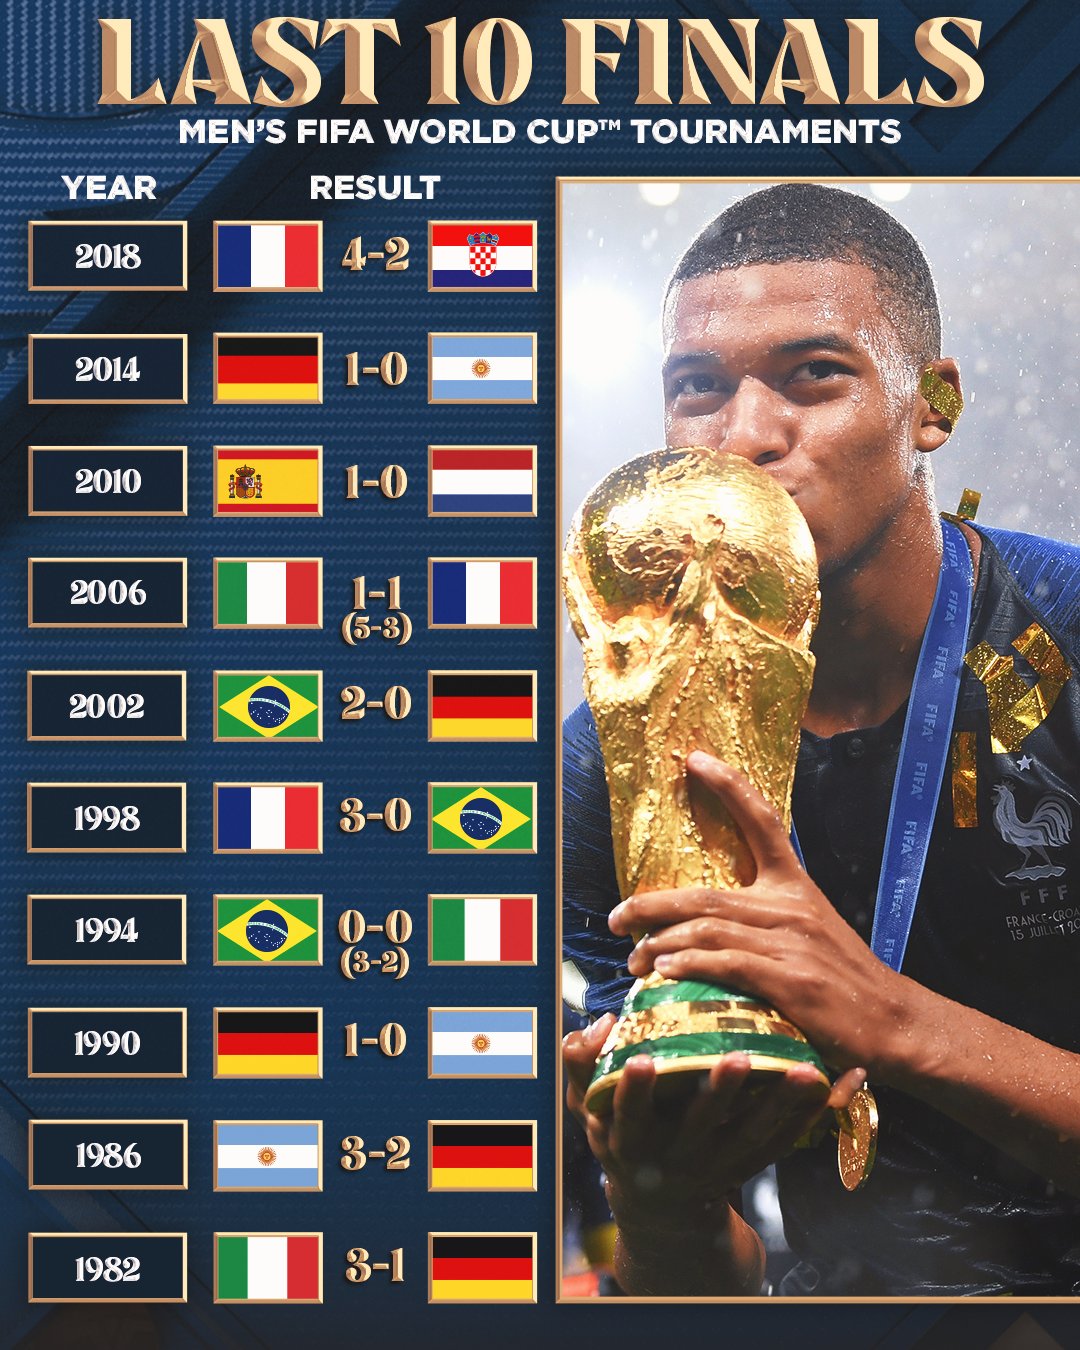 fifa world cup winners